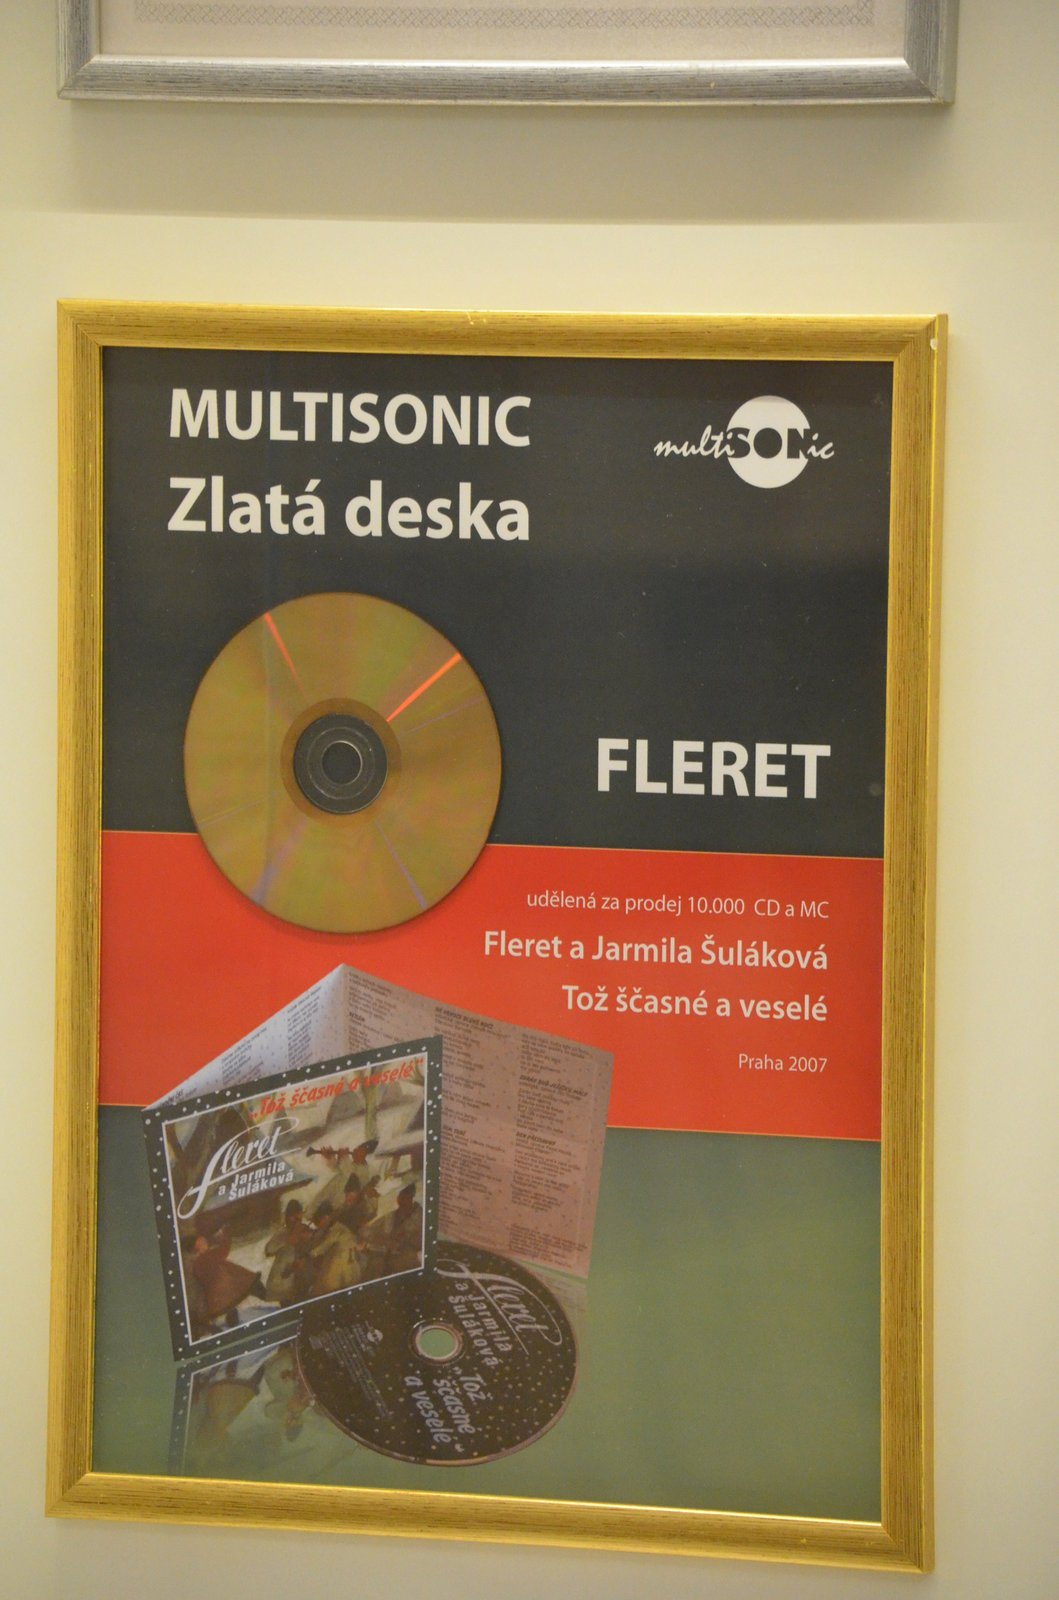 Zlatá deska za Tož ščasné a veselé z roku 2007, kterou nazpívala opět s Flerety.